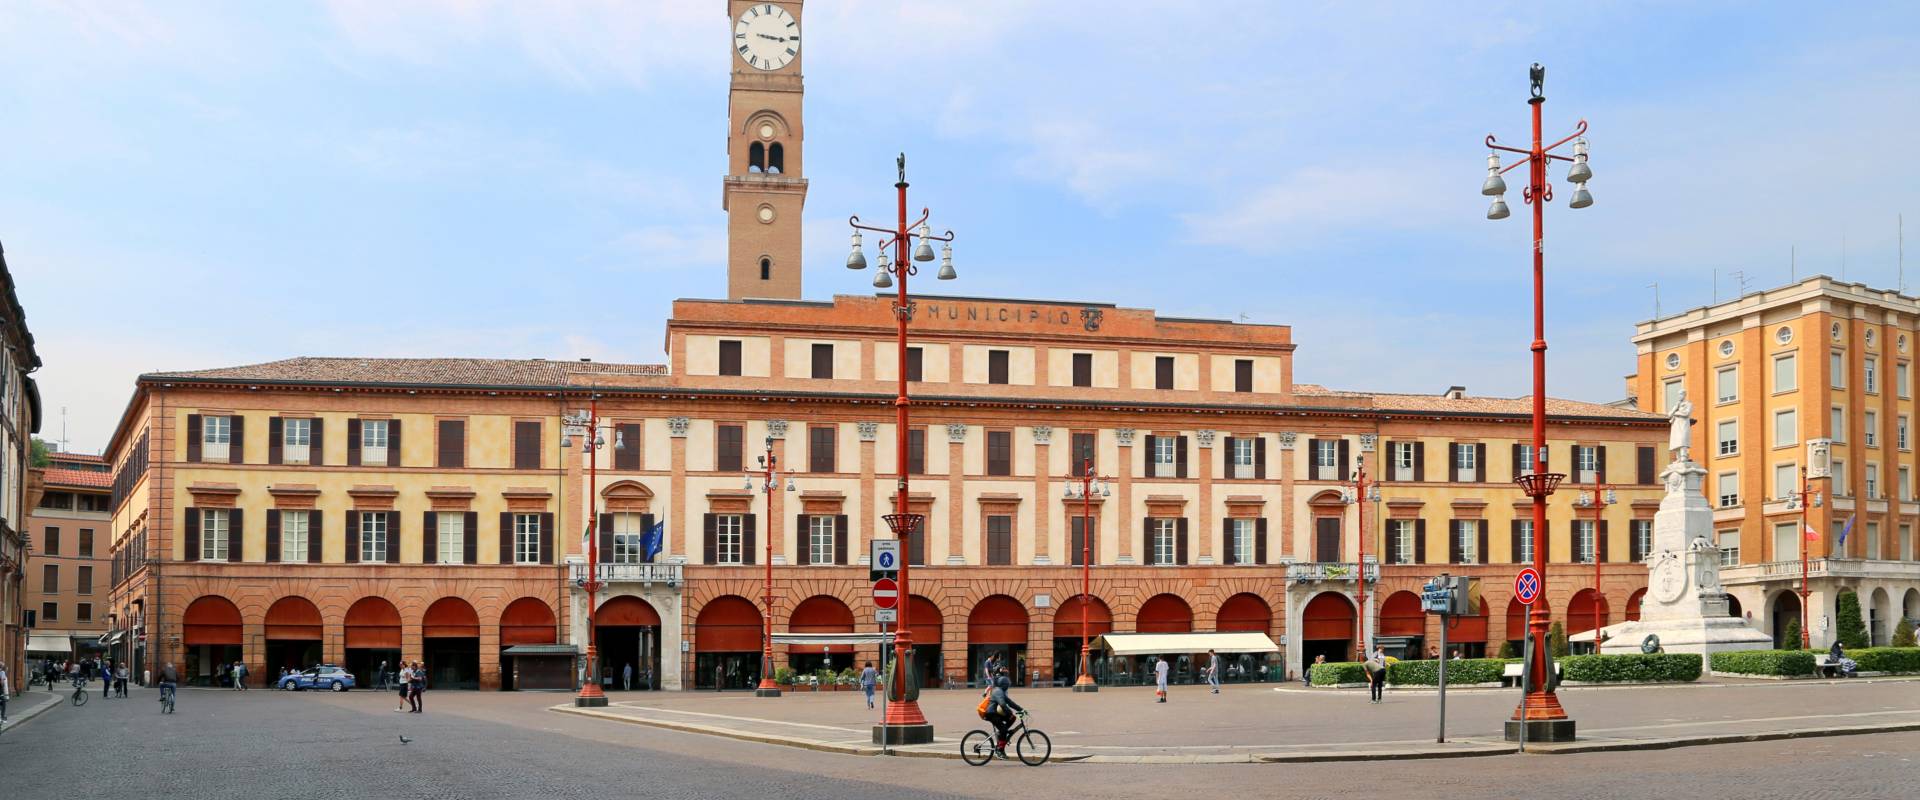 Forlì, piazza aurelio saffi, palazzo municipale 01 foto di Sailko